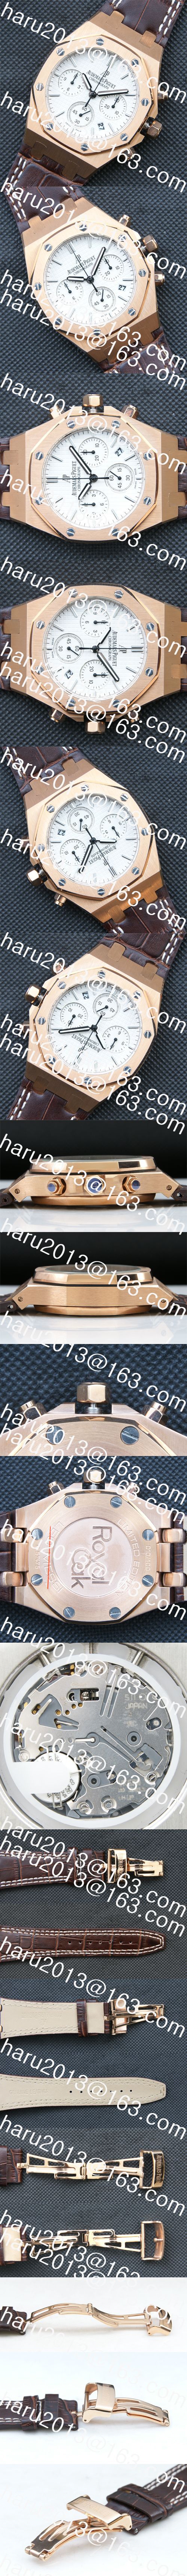 先行販売オーデマピゲ ロイヤルオーク42mmピンクゴールド(ブラウン革ベルト付き)